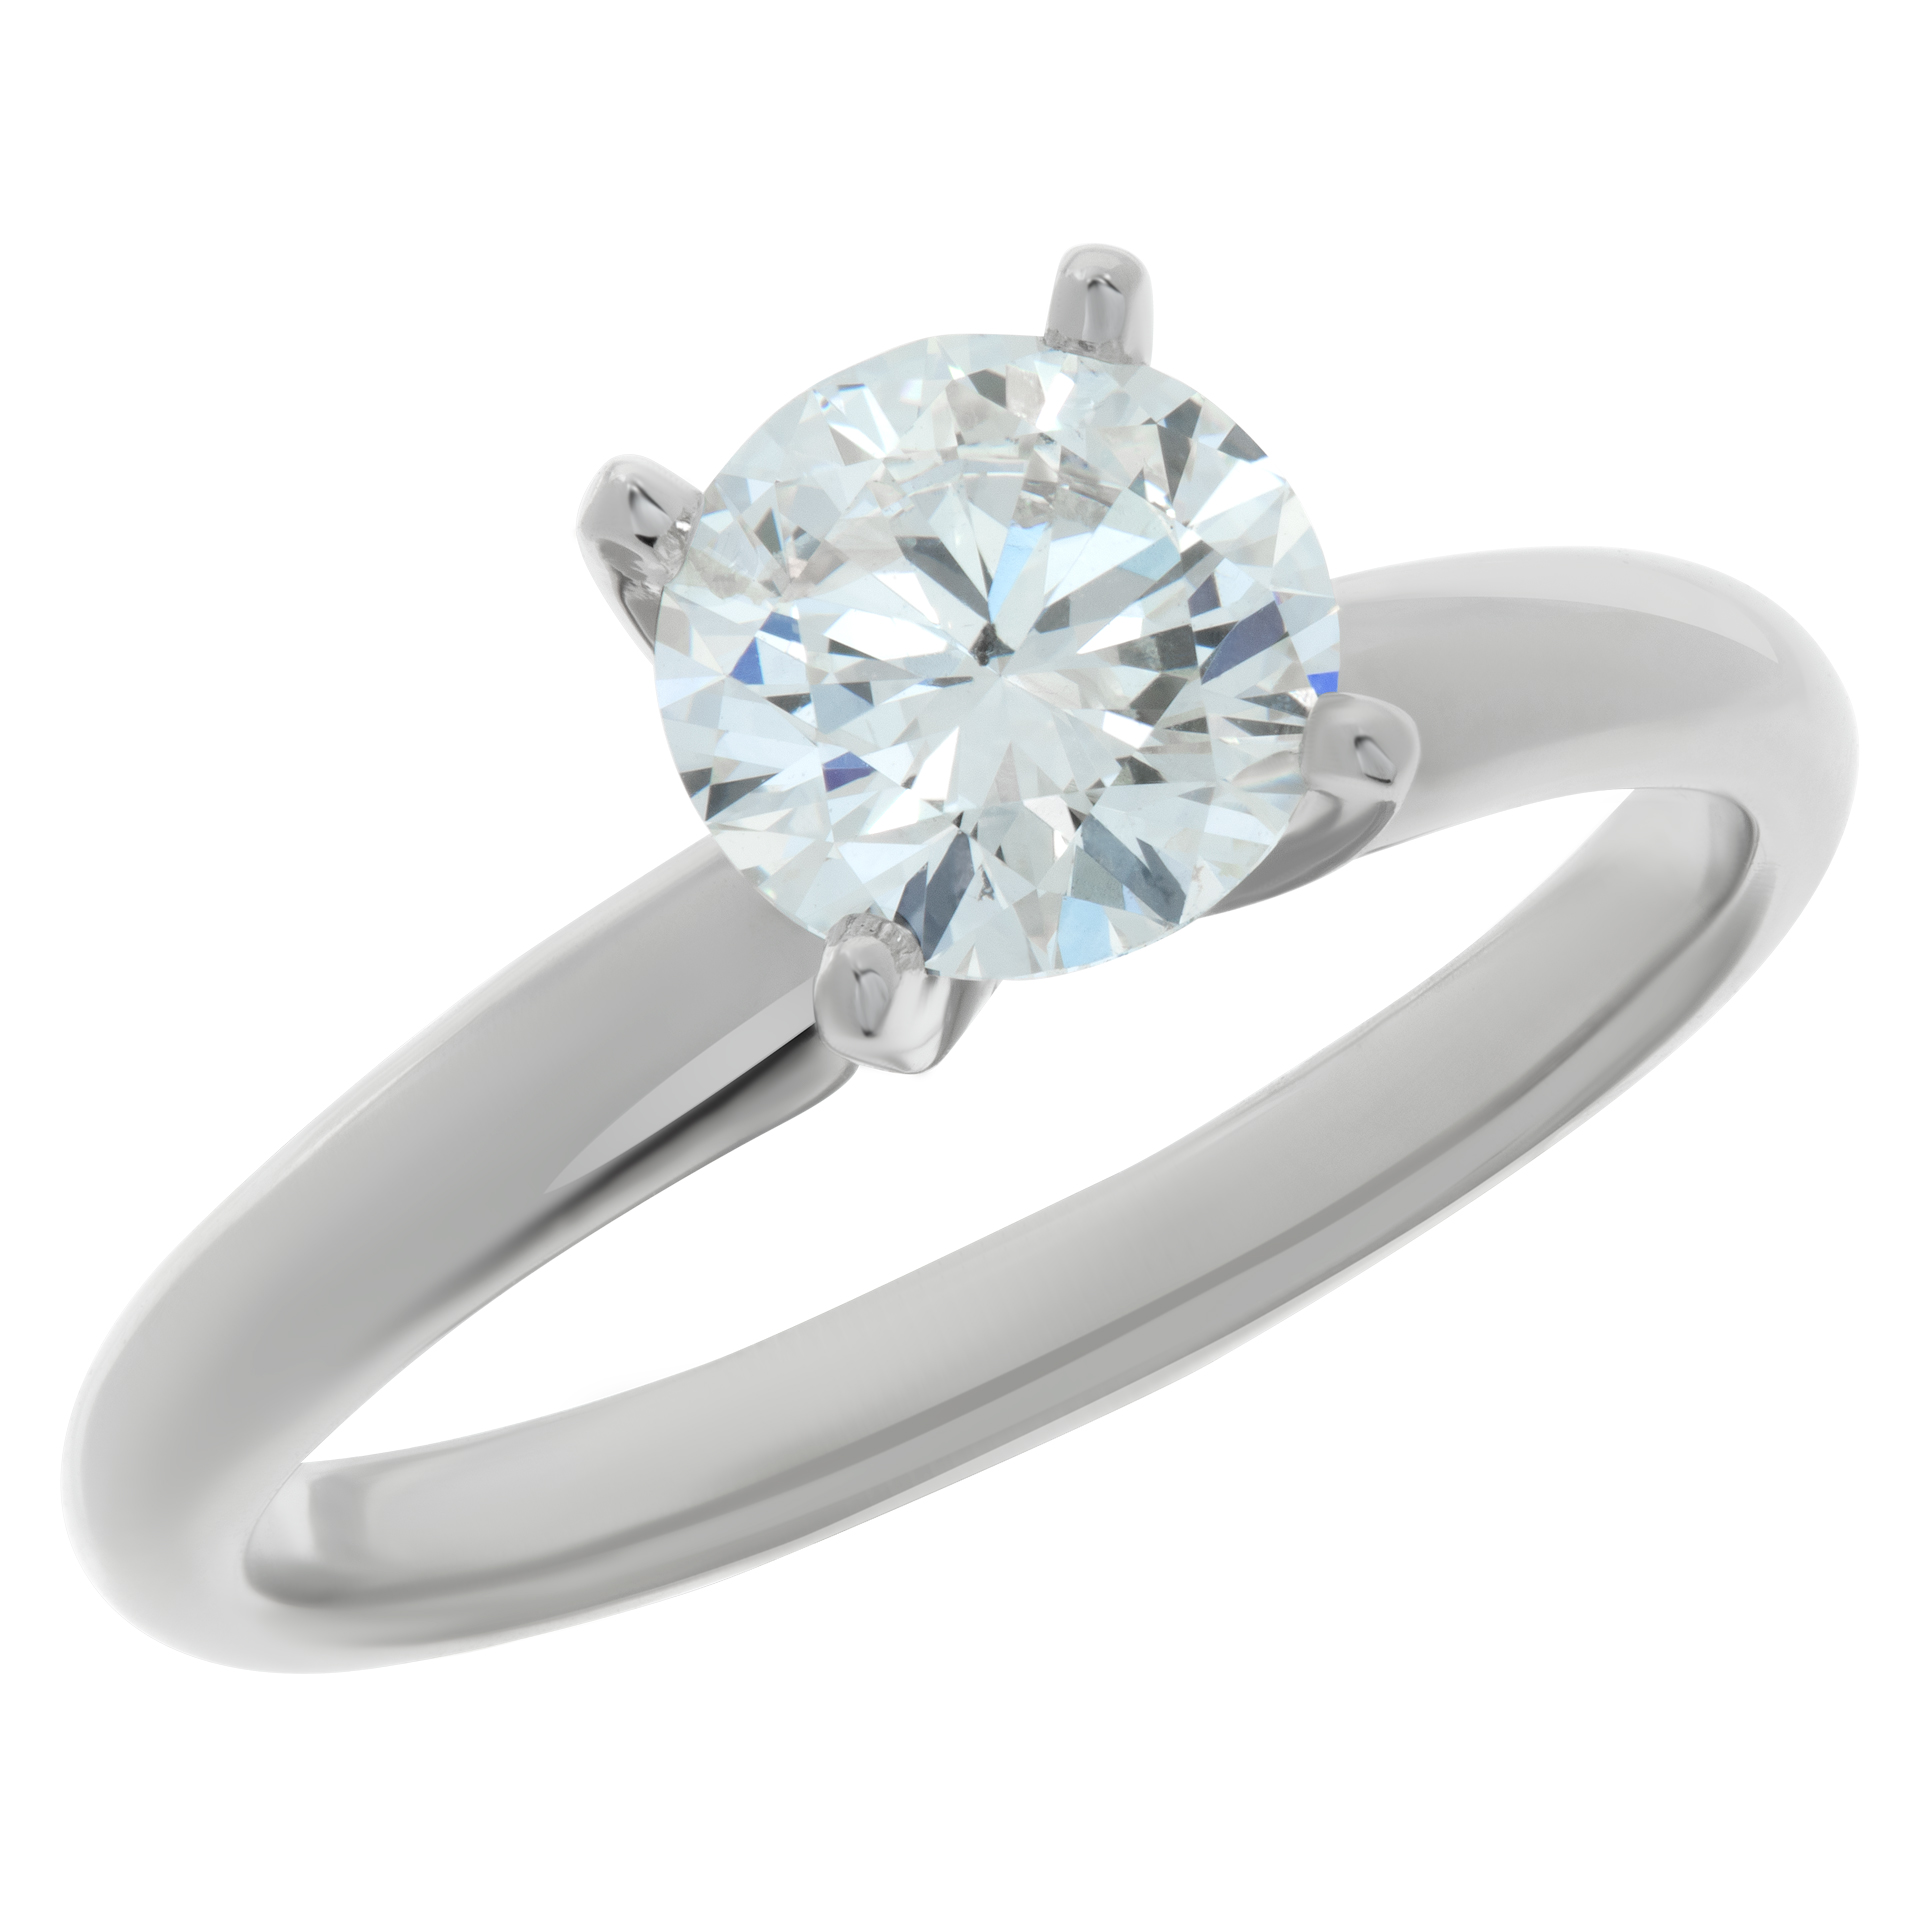 GIA certified round brilliant cut diamond 1.14 carat (H color, I1 clarity, Excellent cut, Excellent polish, Excellent symmetry) image 3